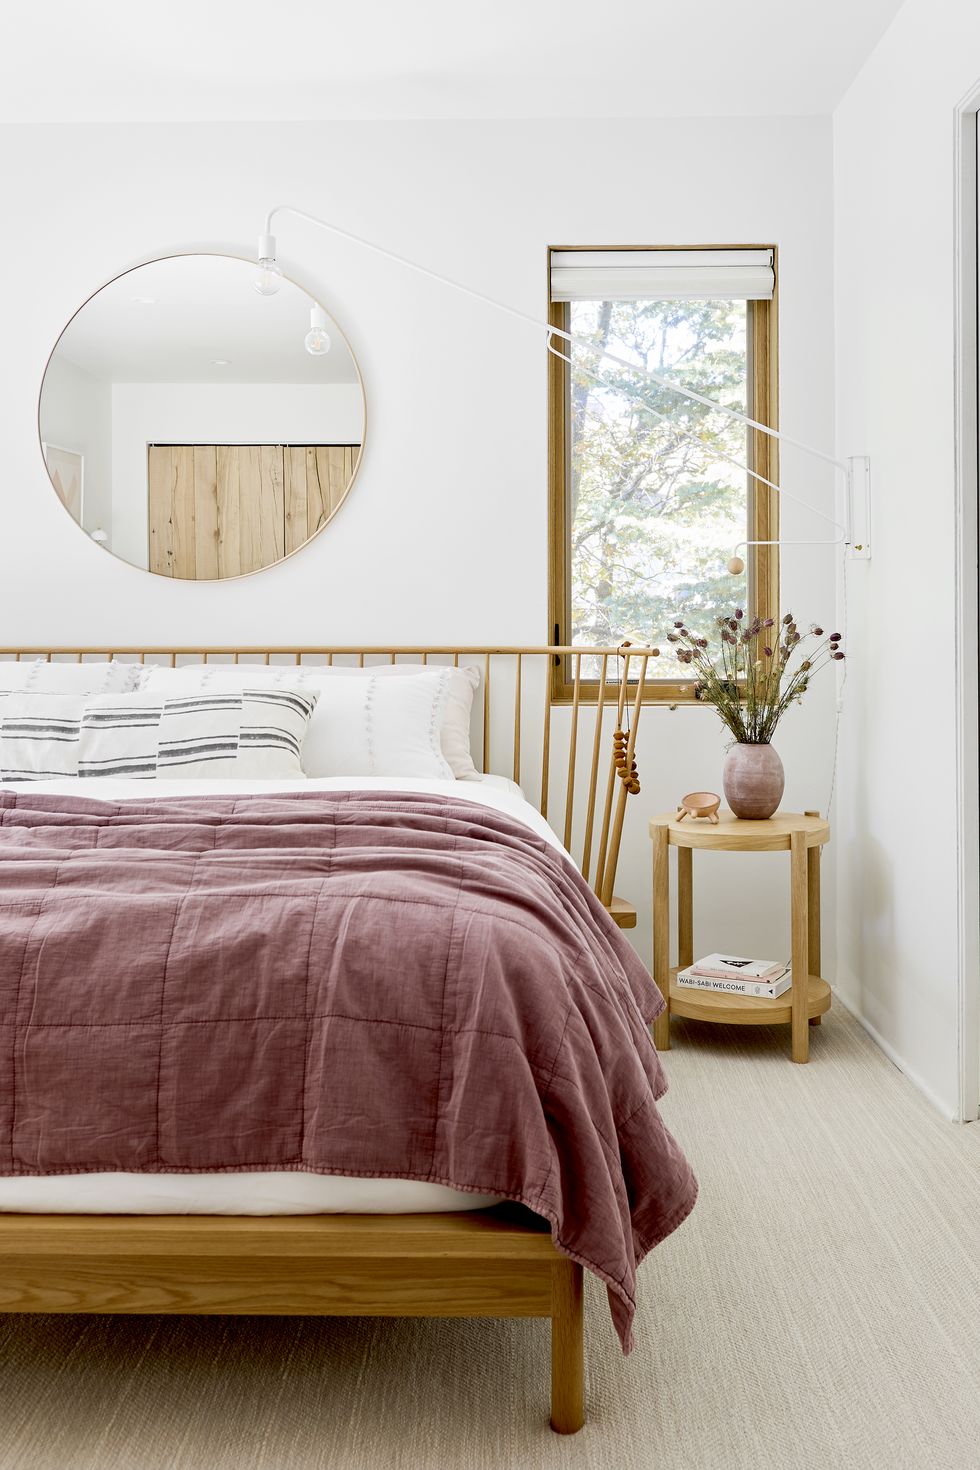 100 Best Bedroom Ideas - Bedroom Design Inspiration